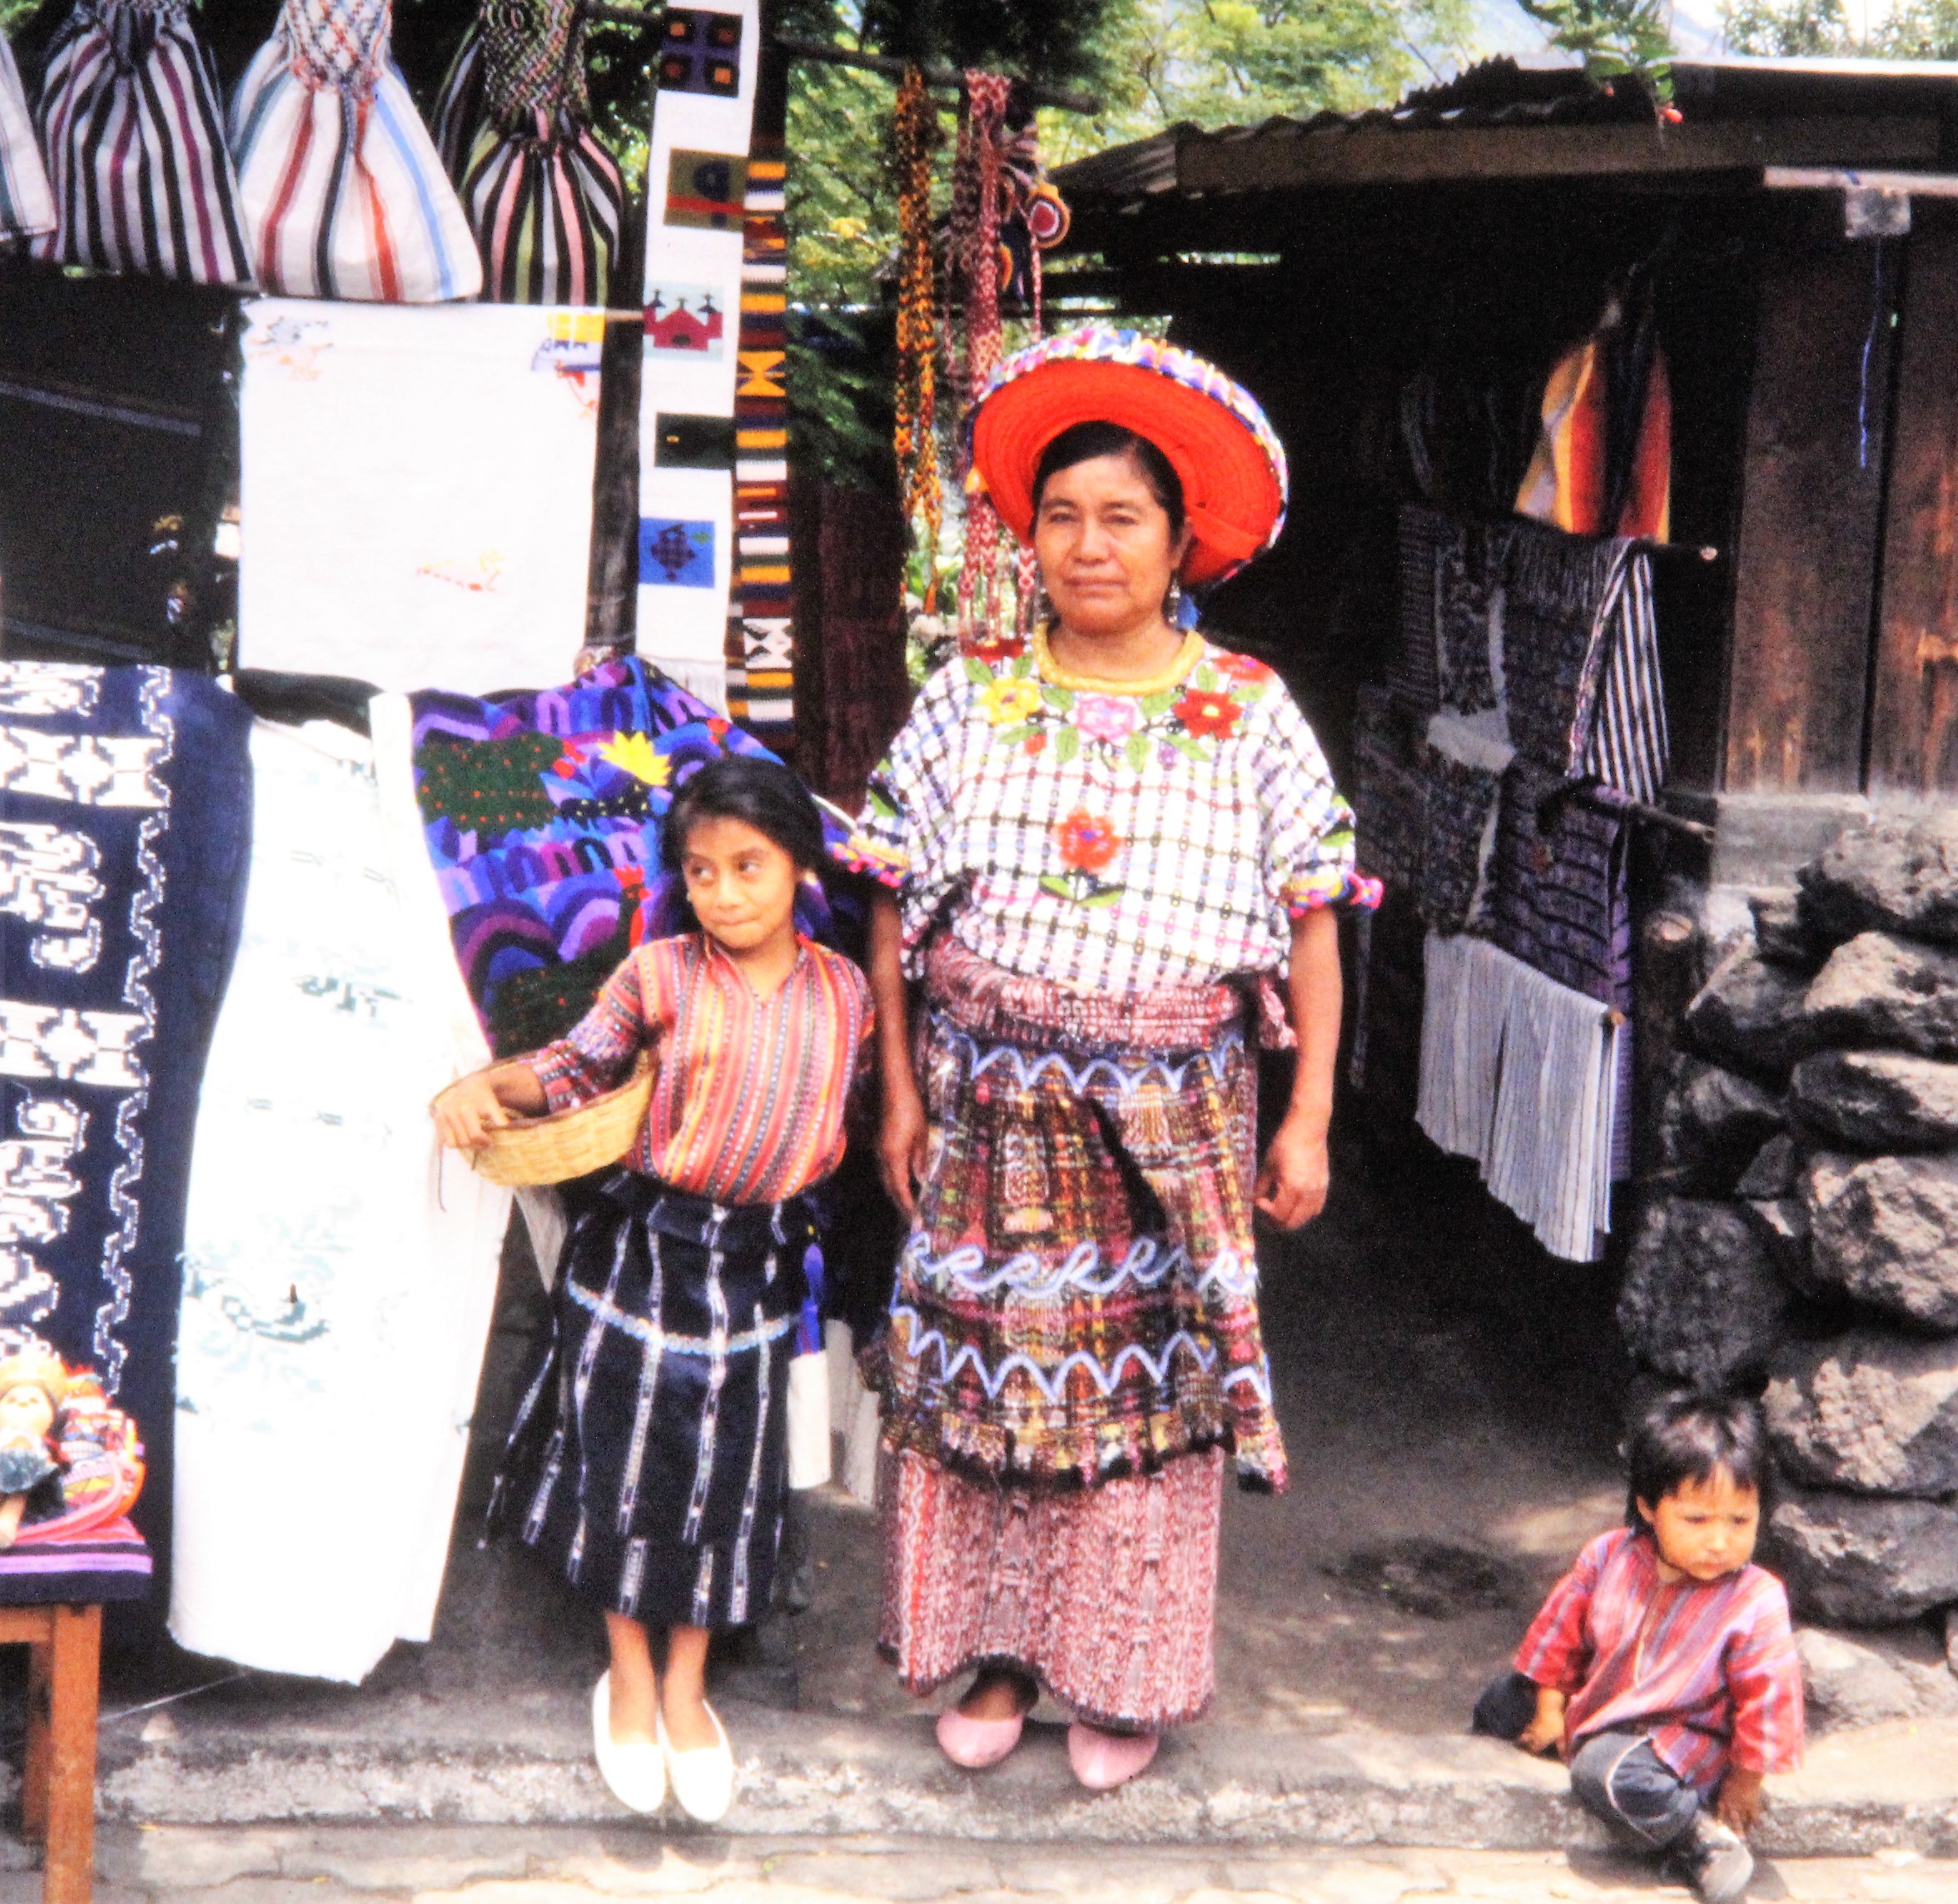 Selling traditional crafts near Atitlan, Guatemala (2)